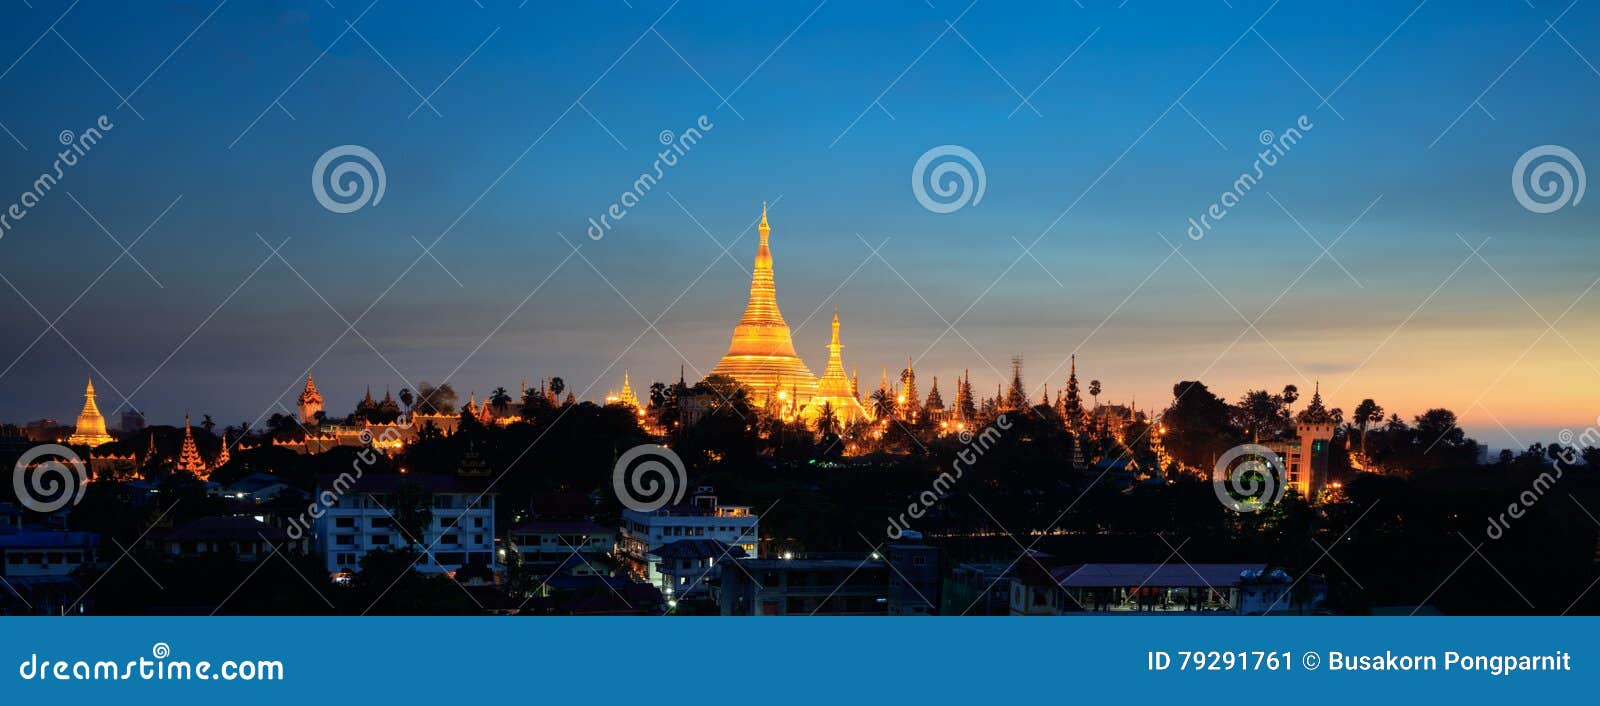 shwedagon pagoda at dusk, yangon